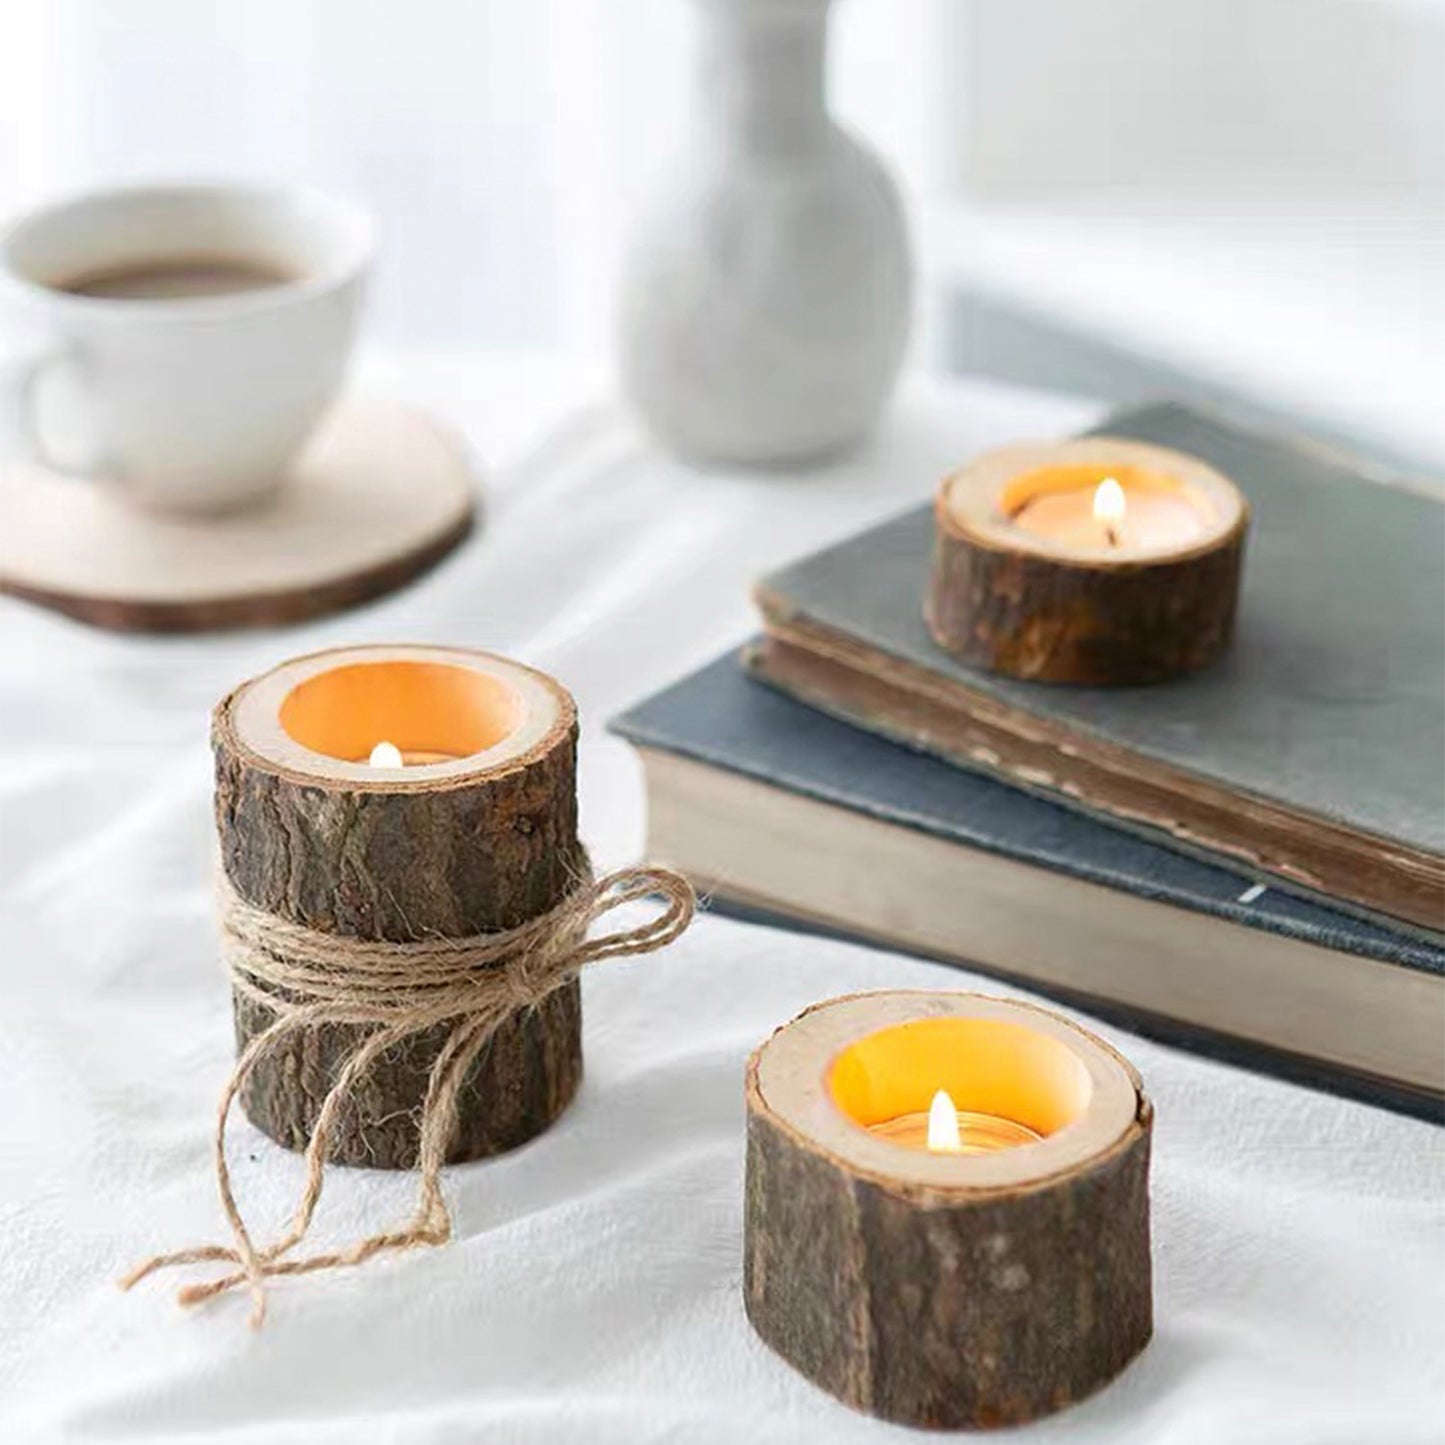 Wooden Tea Light Candleholder Set